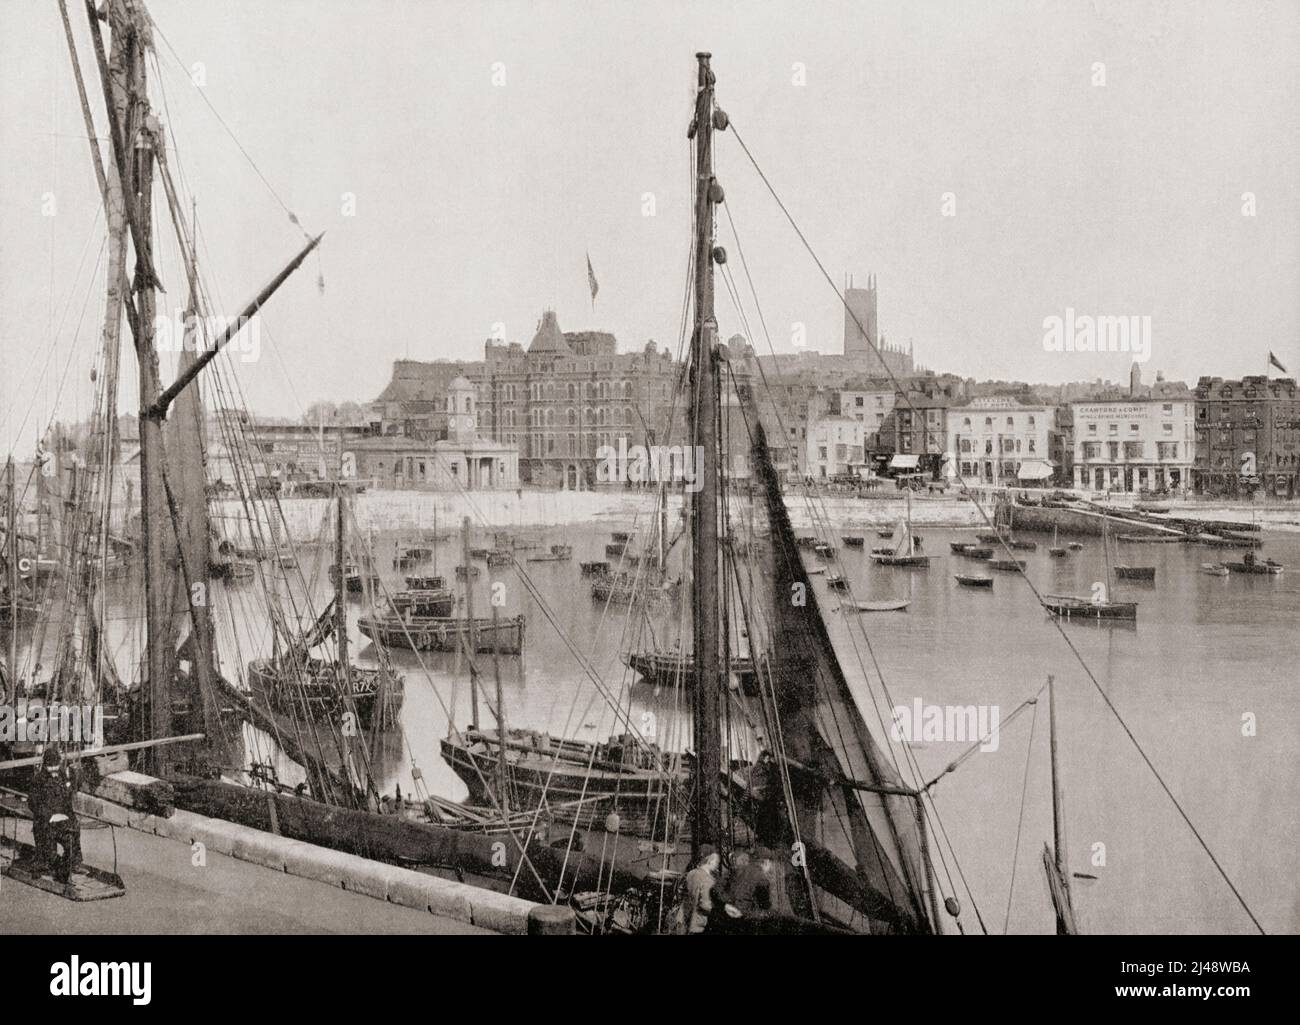 Der Hafen und die Anlegestelle, Margate, Kent, England, hier im 19.. Jahrhundert gesehen. Aus der ganzen Küste, ein Album mit Bildern von Fotografien der Chief Seaside Orte von Interesse in Großbritannien und Irland veröffentlicht London, 1895, von George Newnes Limited. Stockfoto